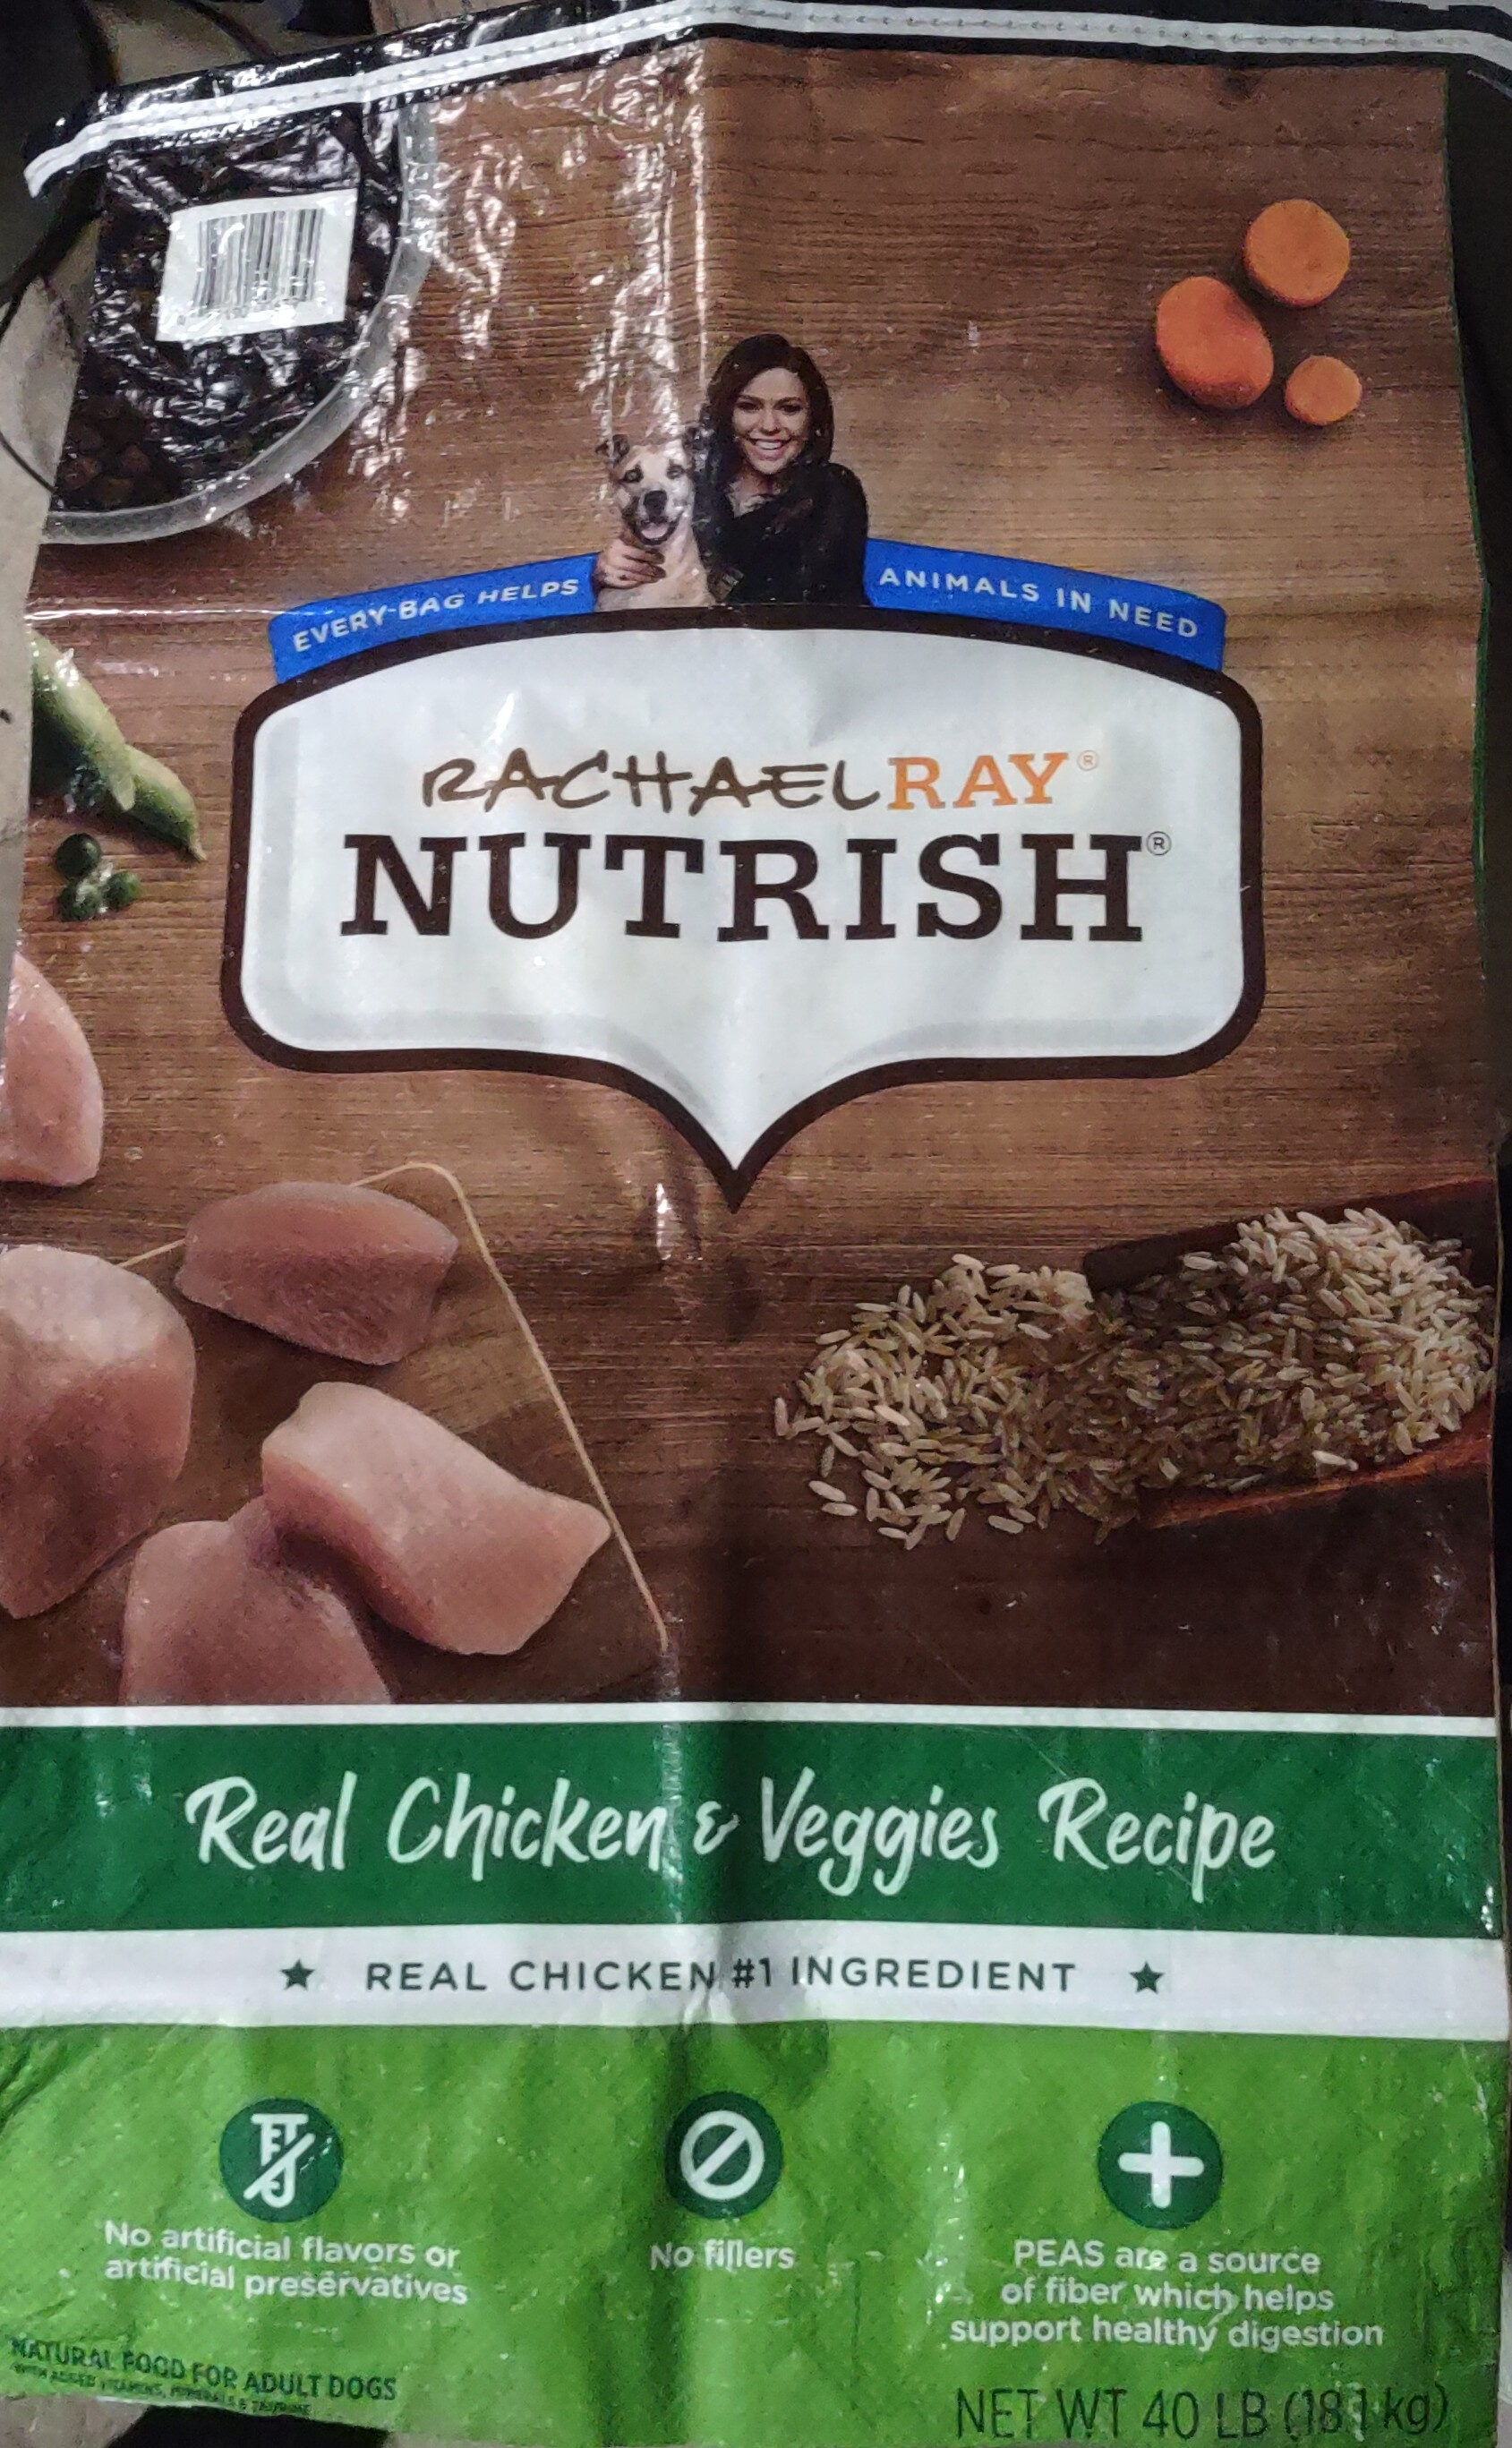 Rachel Ray Nutrish - Real Chicken &Veggies Recipie - Product - en